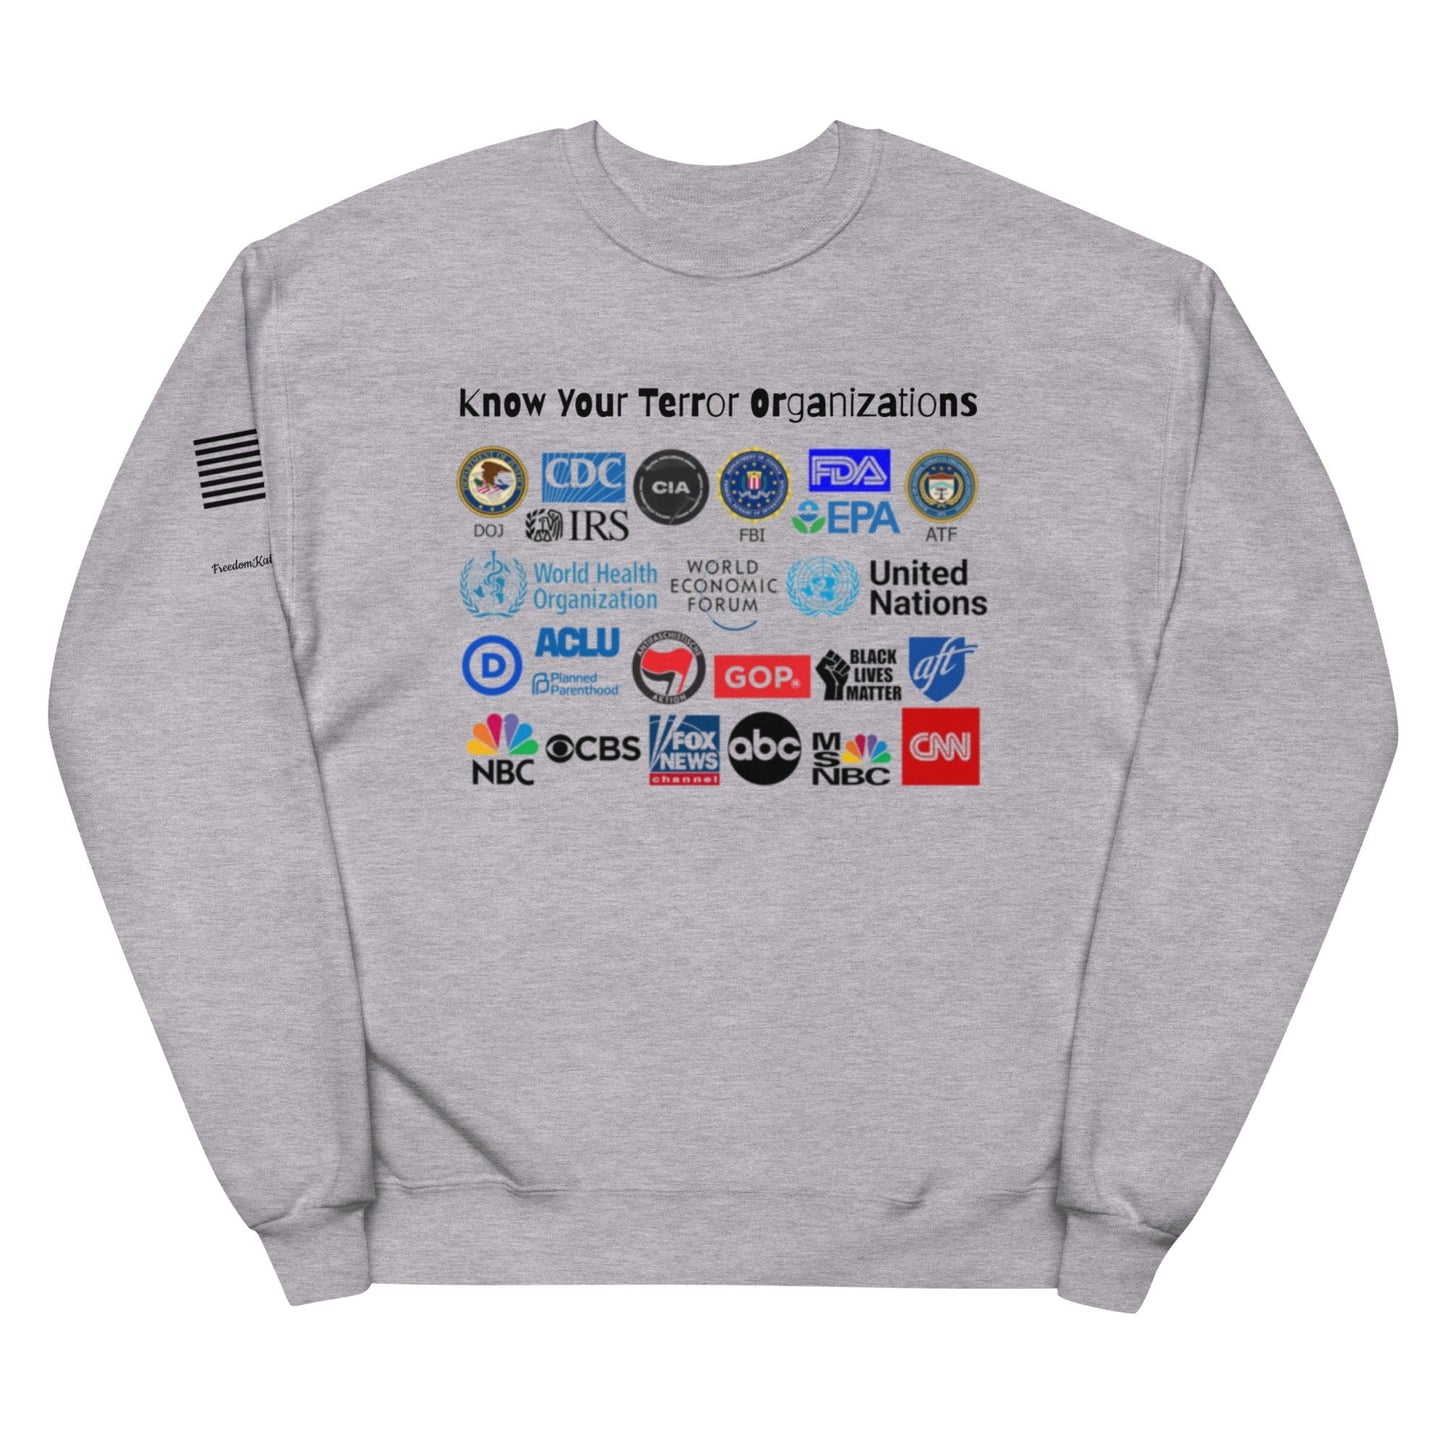 FreedomKat Designs Sweatshirt Light Steel / S Know Your Terror Organizations fleece sweatshirt